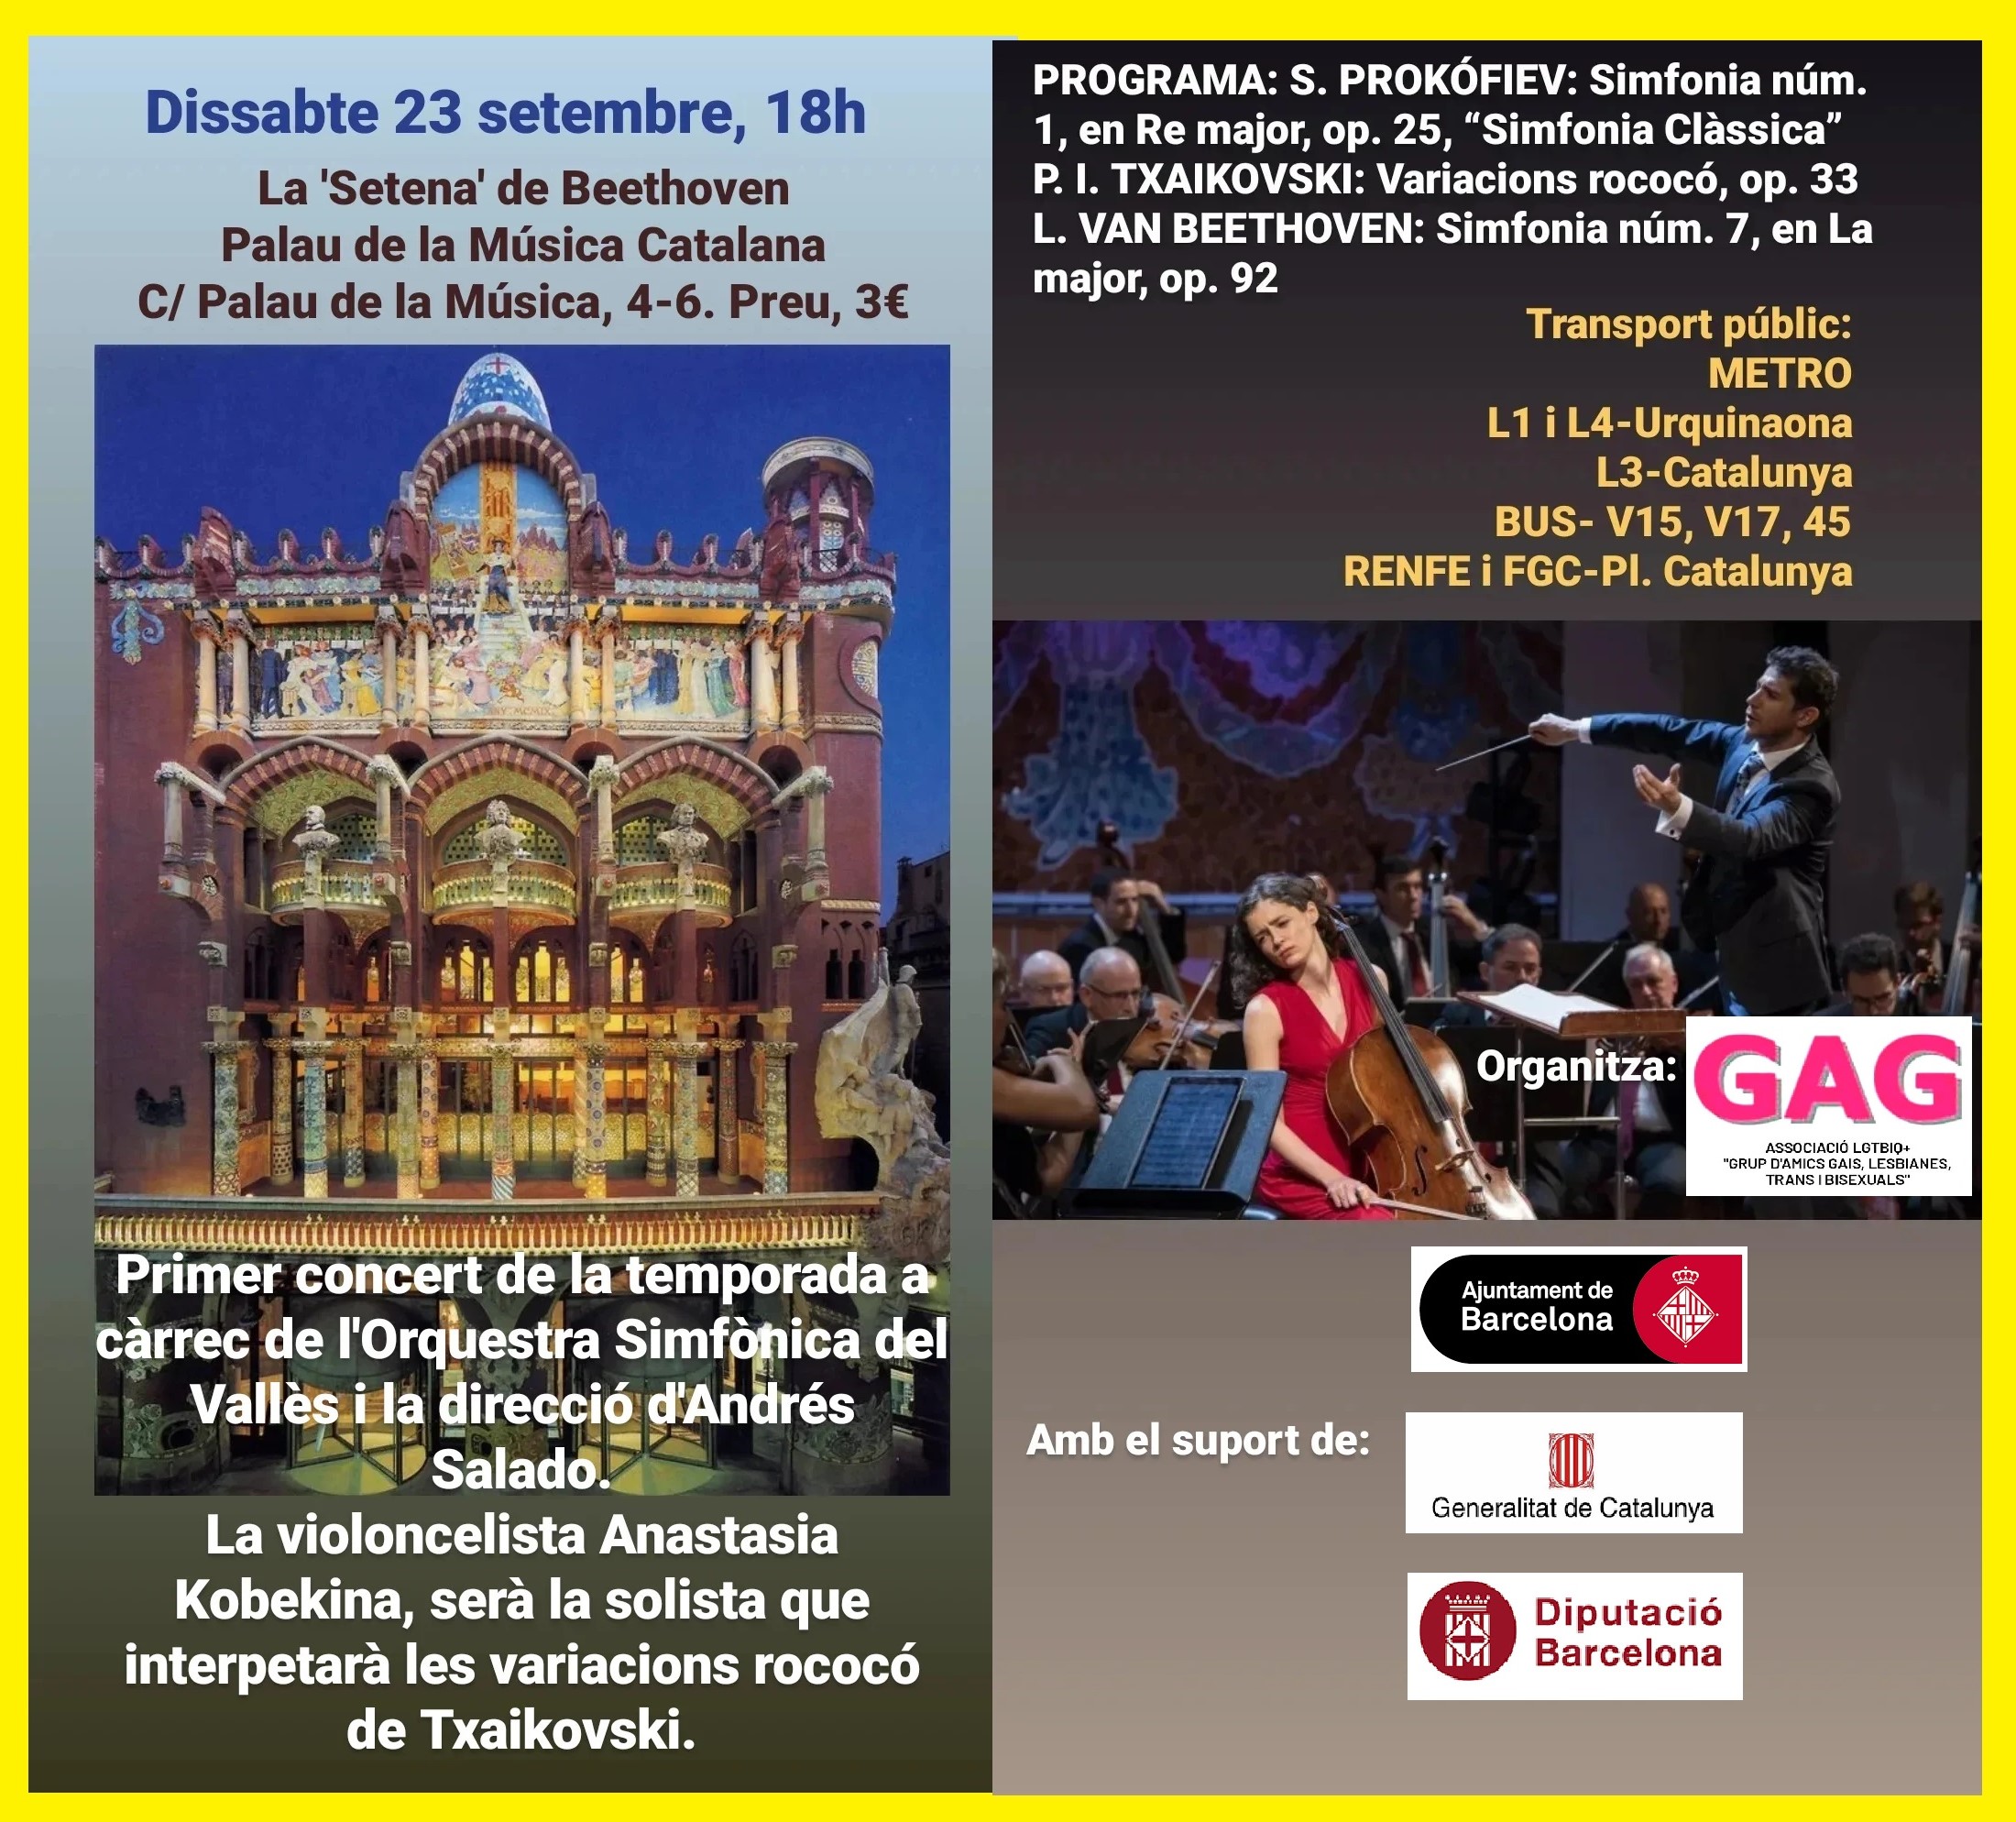 Sabado, 23 de septiembre a las 18h: Concierto en el Palacio de la Musica Catalana